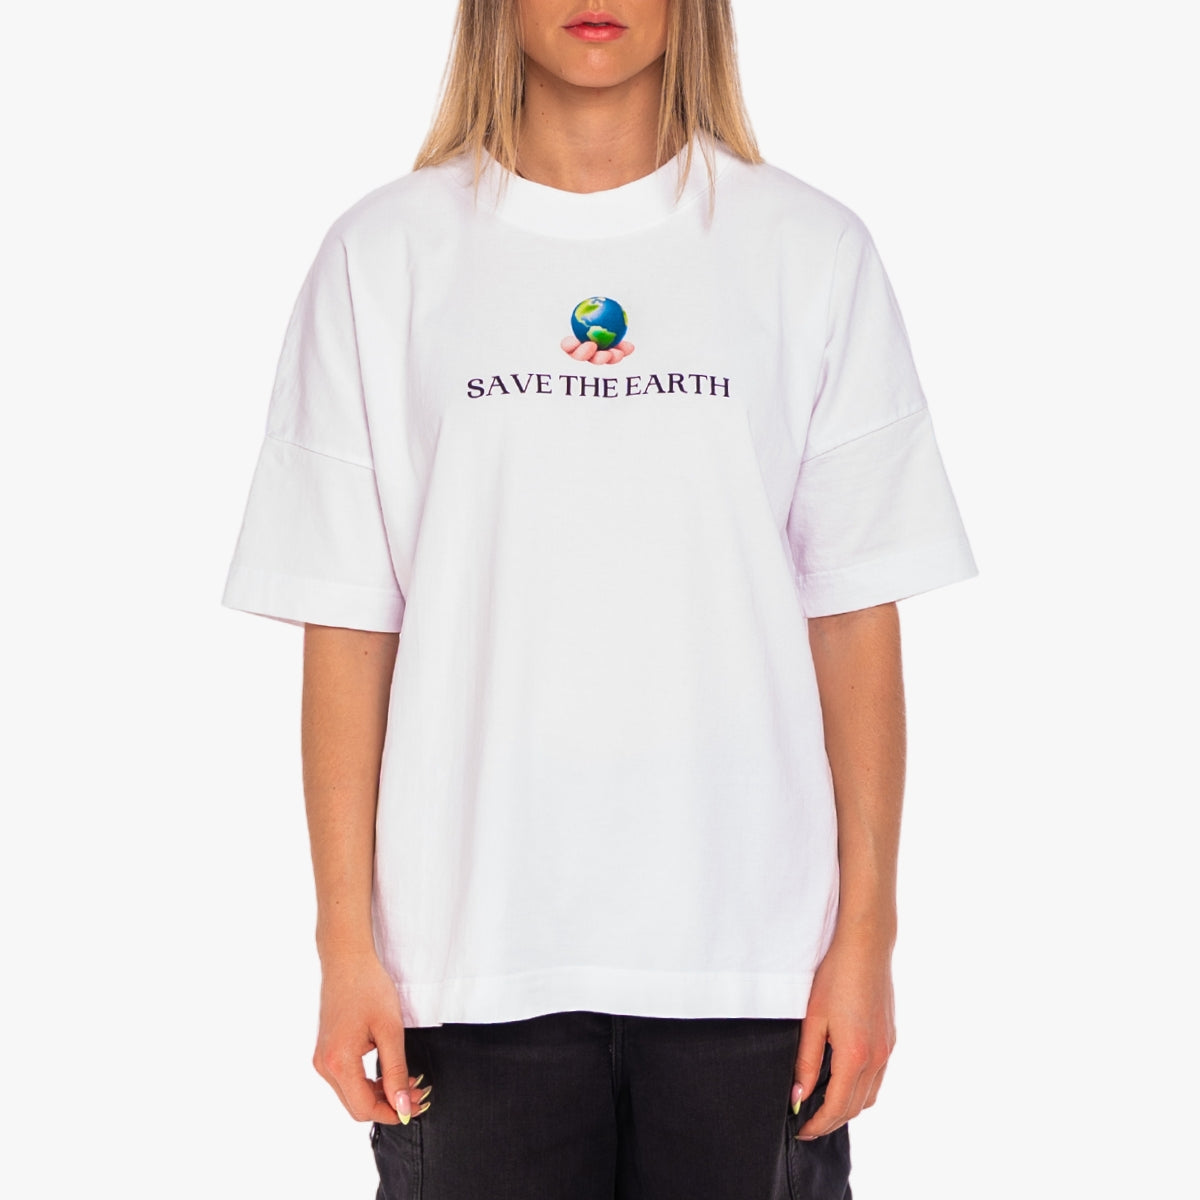 'SAVE THE EARTH' Organic Oversize Shirt in der Farbe White als Detail Nahaufnahme getragen von einem weiblichen Model